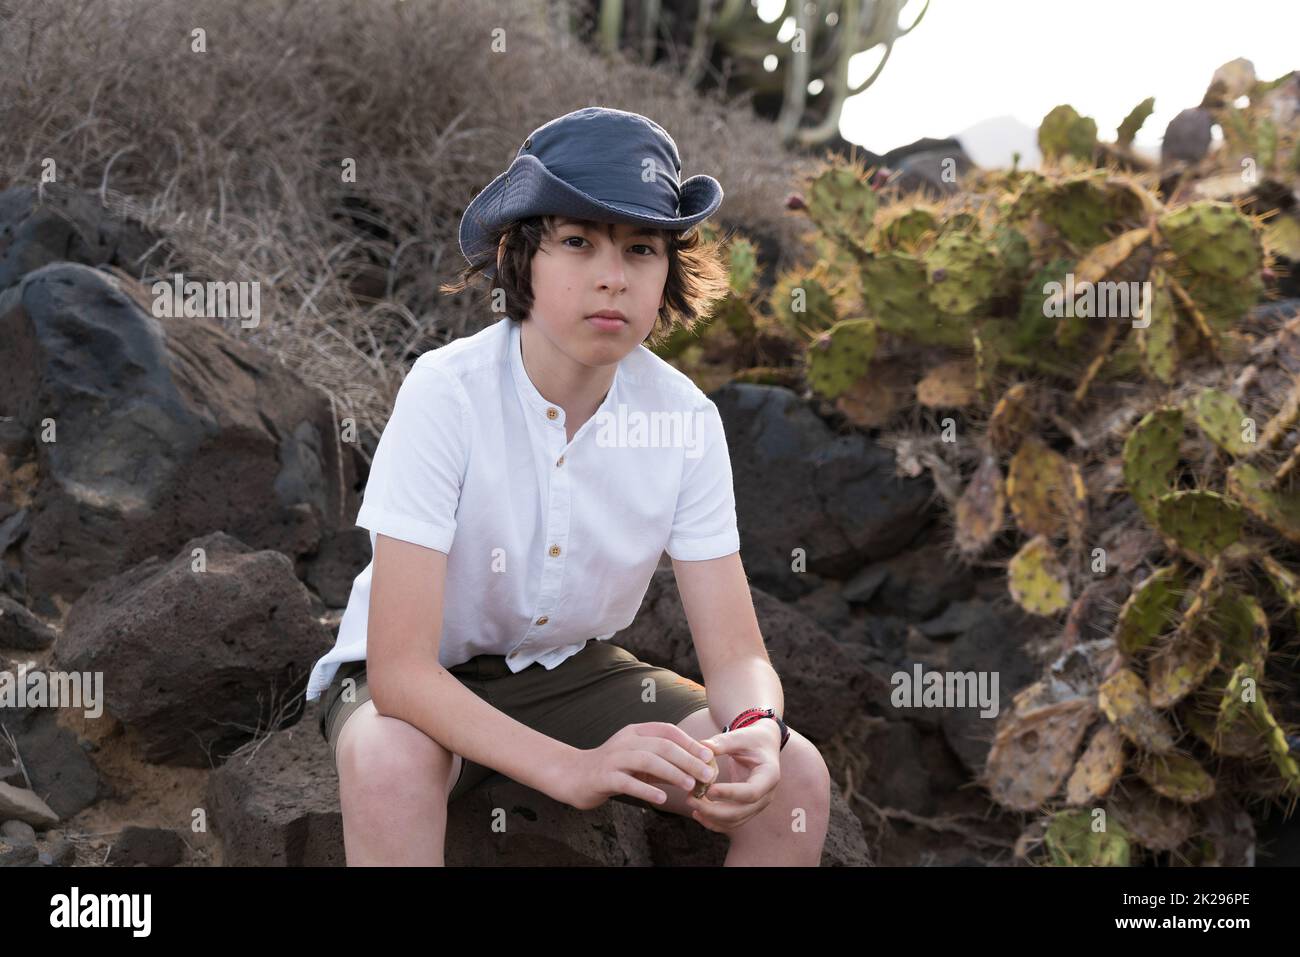 Retrato de un adolescente en una camisa de polo y un sombrero contra el fondo de cactus. Foto de stock